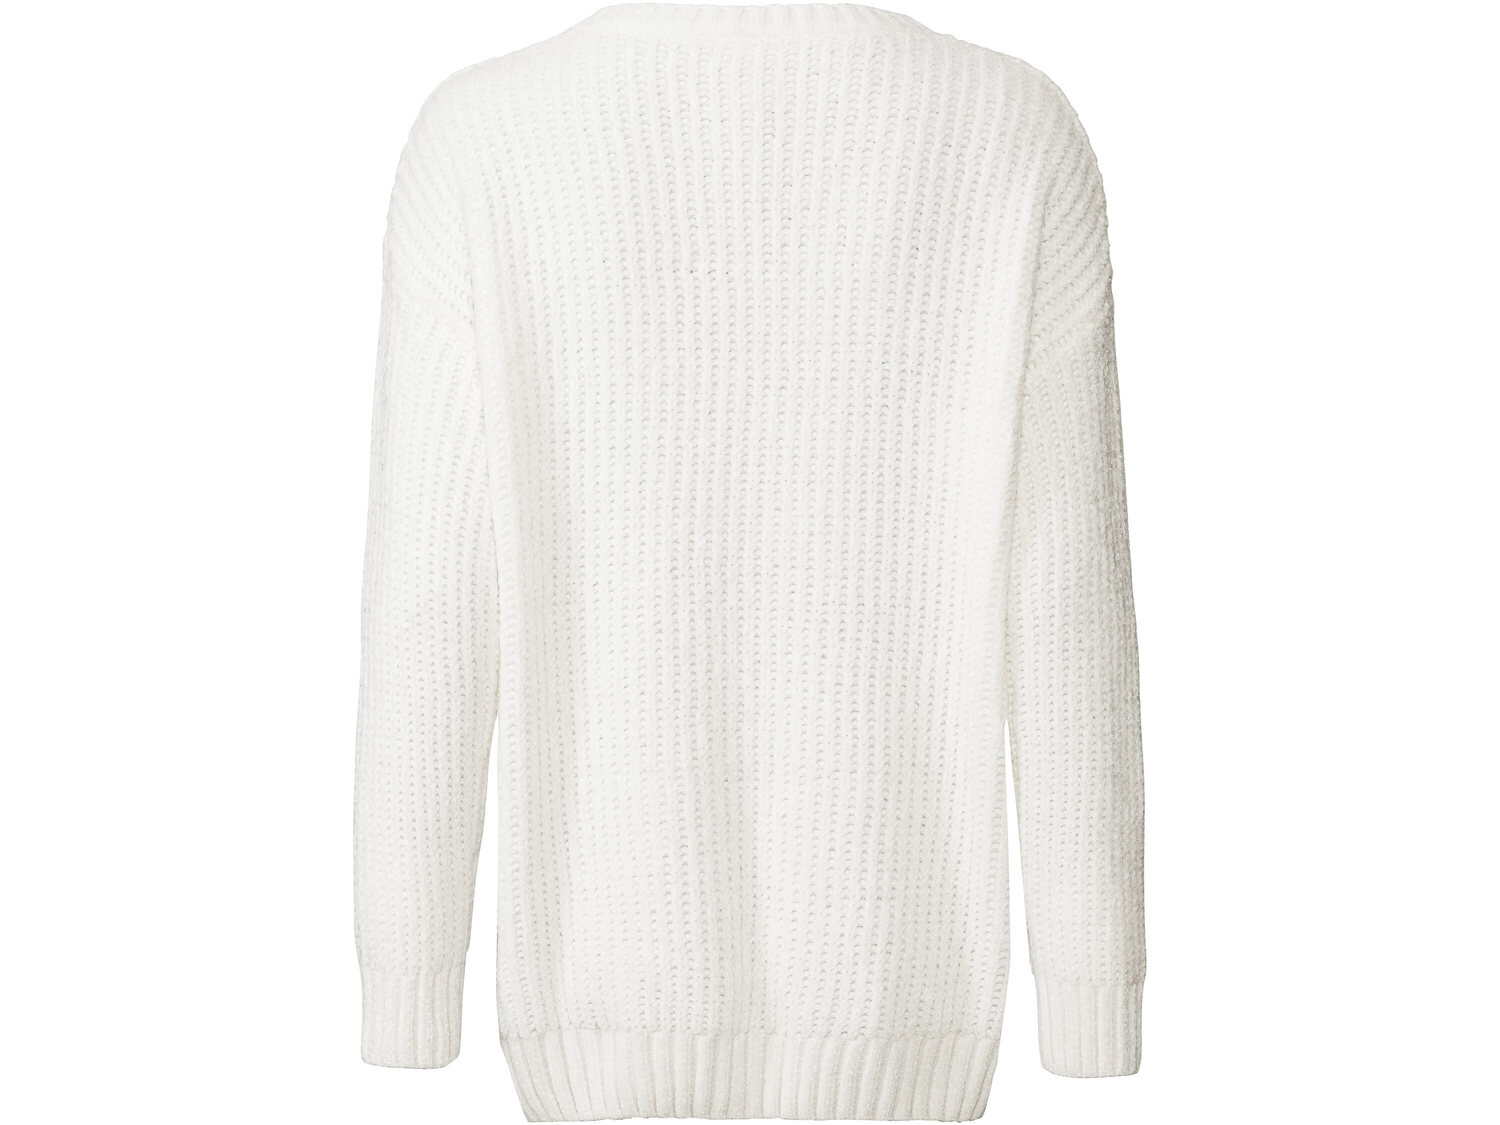 Sweter z szenili Esmara, cena 39,99 PLN 
- rozmiary: S-L
- modny, gruby splot
- ...